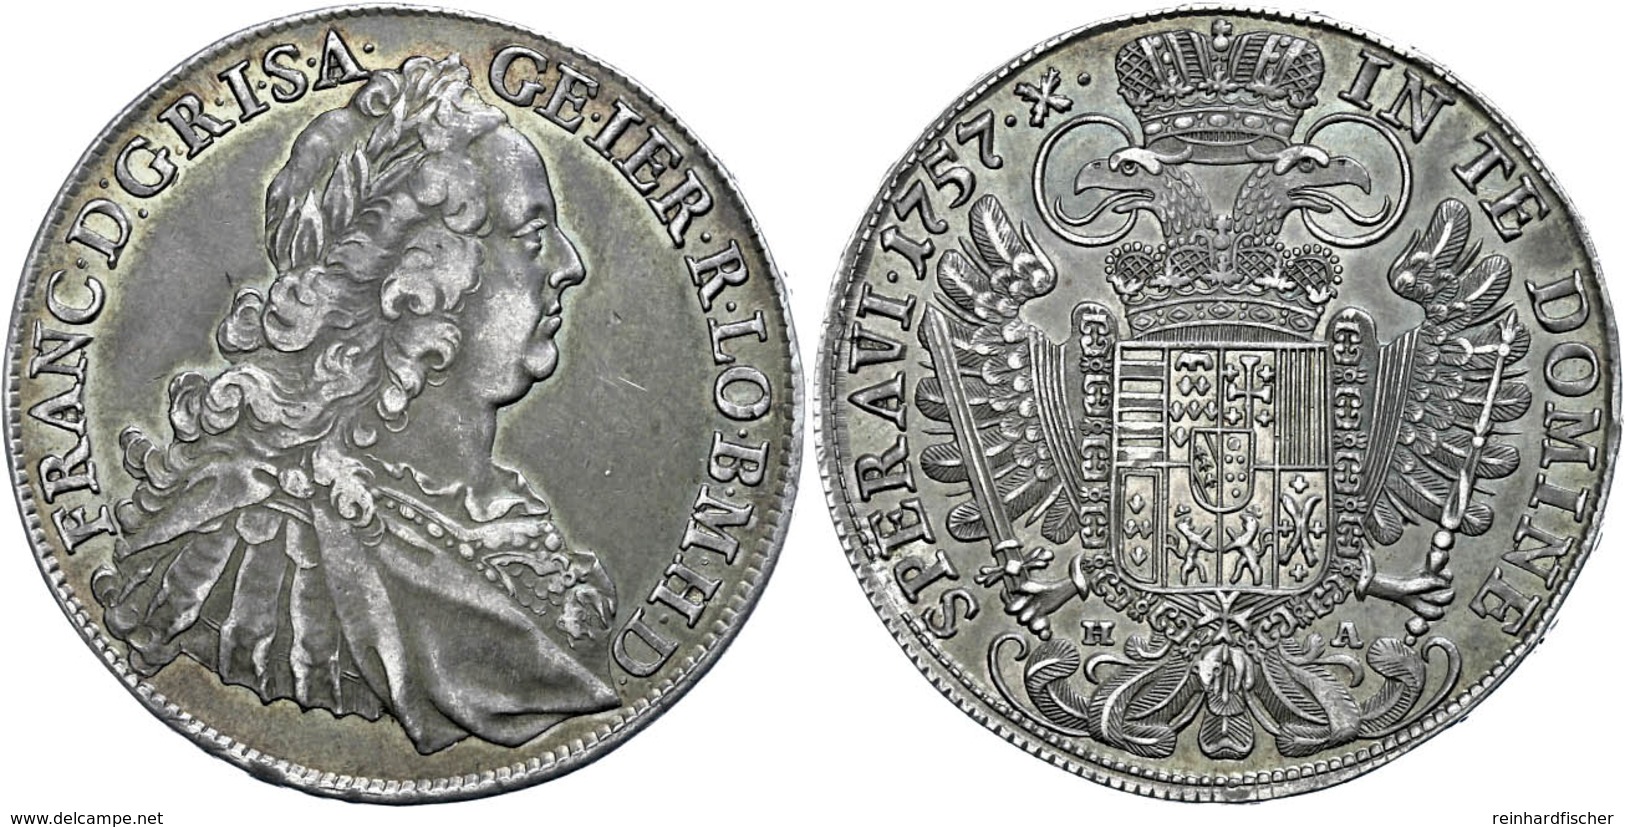 Taler, 1757, Franz I. Stefan, HA, Hall, Dav. 1155, Schöne Patina, Vz+. - Autriche